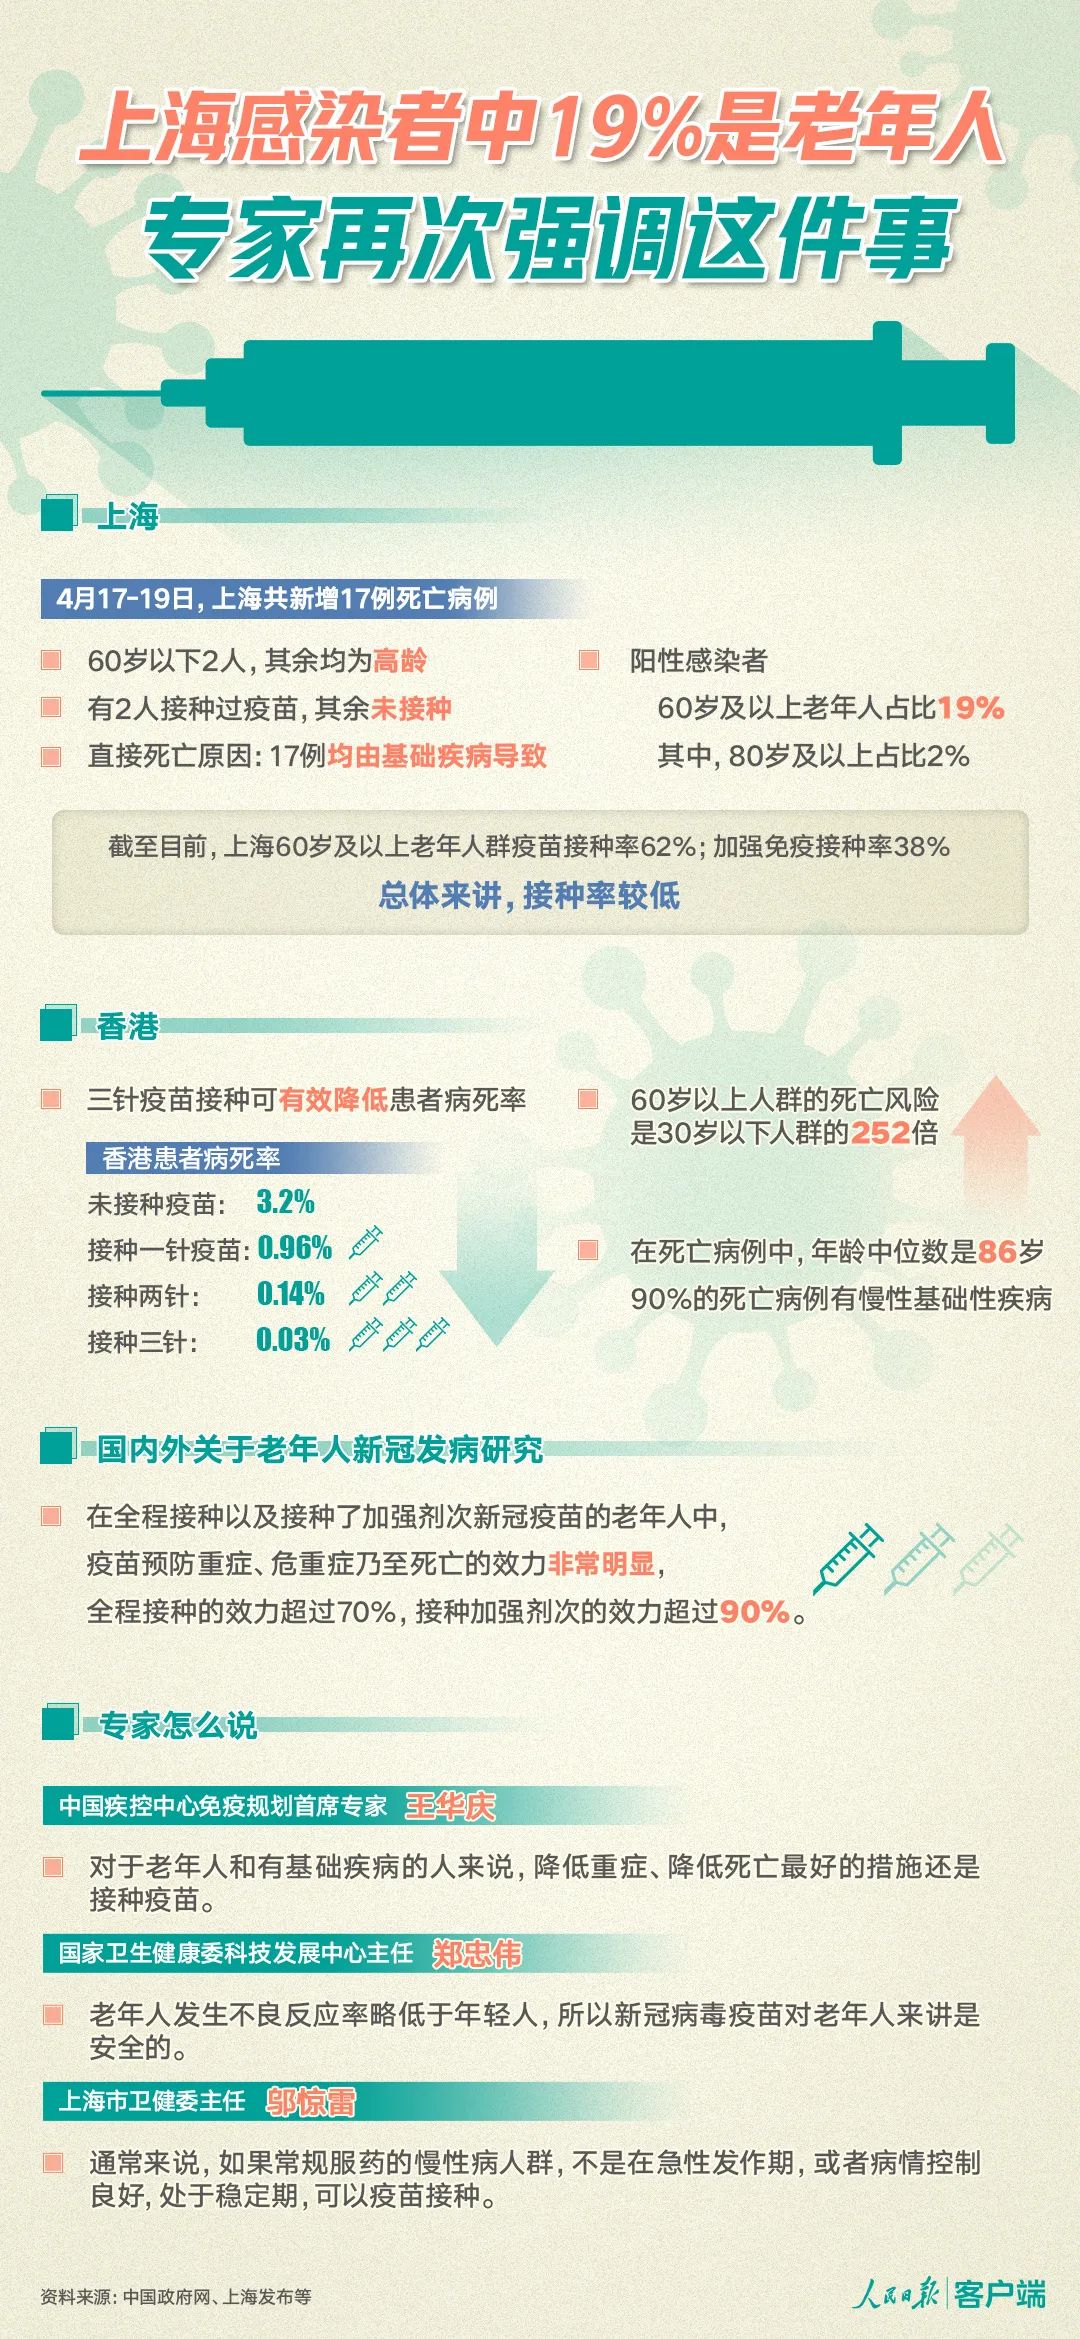 上海感染者中19%是老年人,再次强调这件事